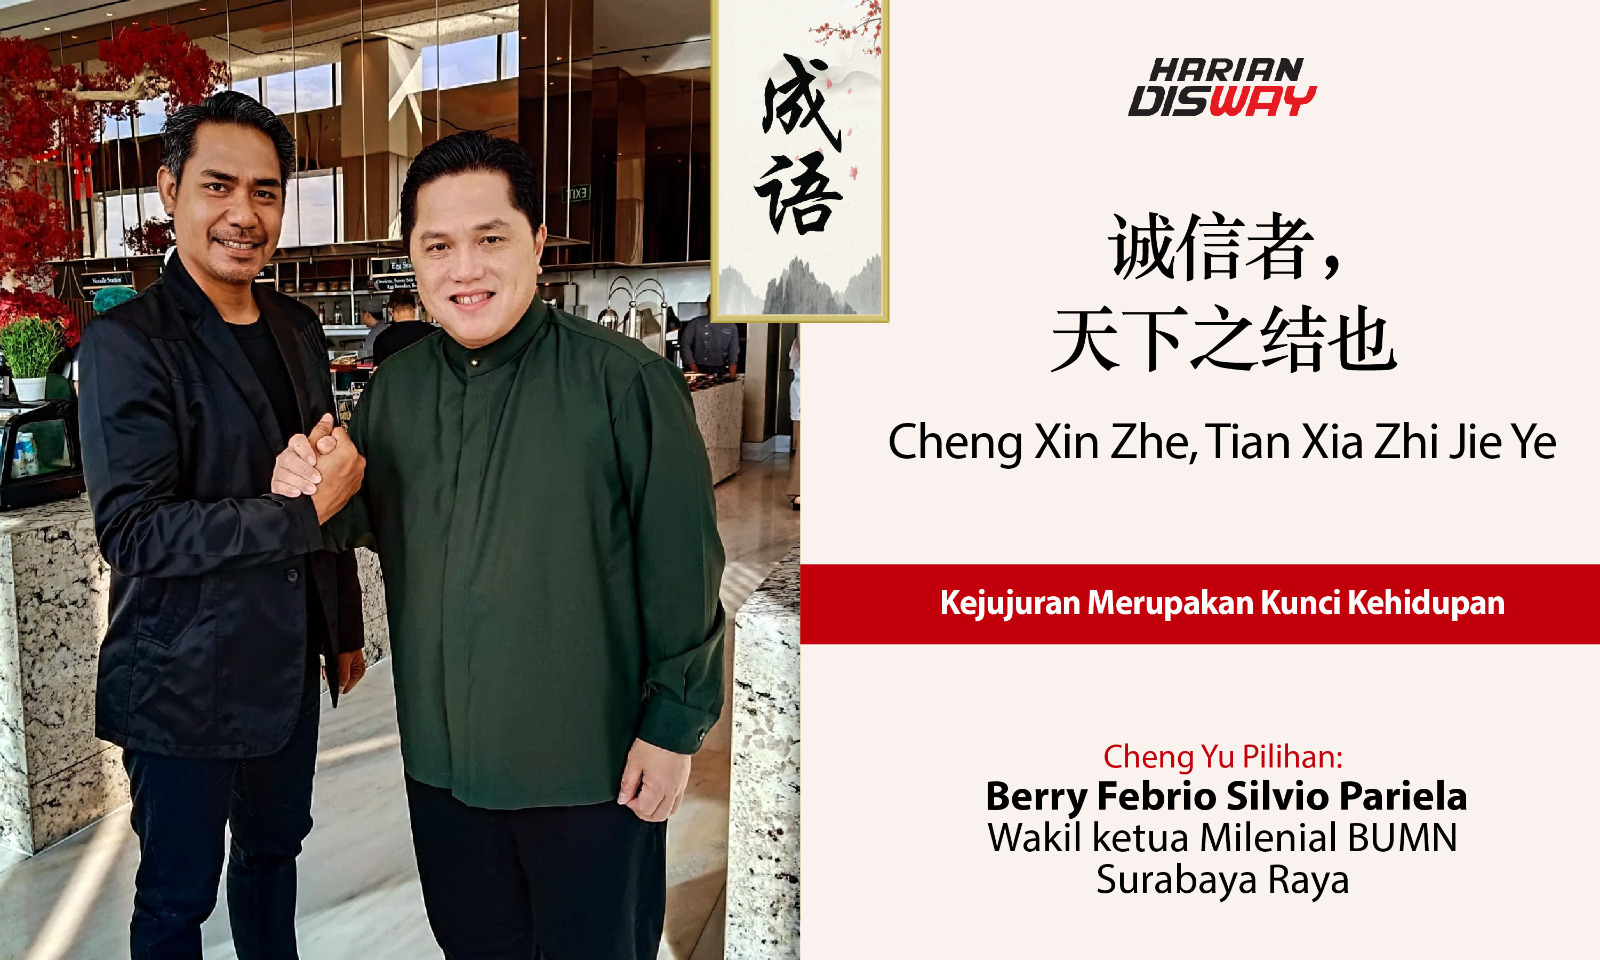 Cheng Yu Pilihan Wakil Ketua Milenial BUMN Surabaya Raya Berry Febrio Silvio Pariela: Cheng Xin Zhe, Tian Xia Zhi Jie Ye